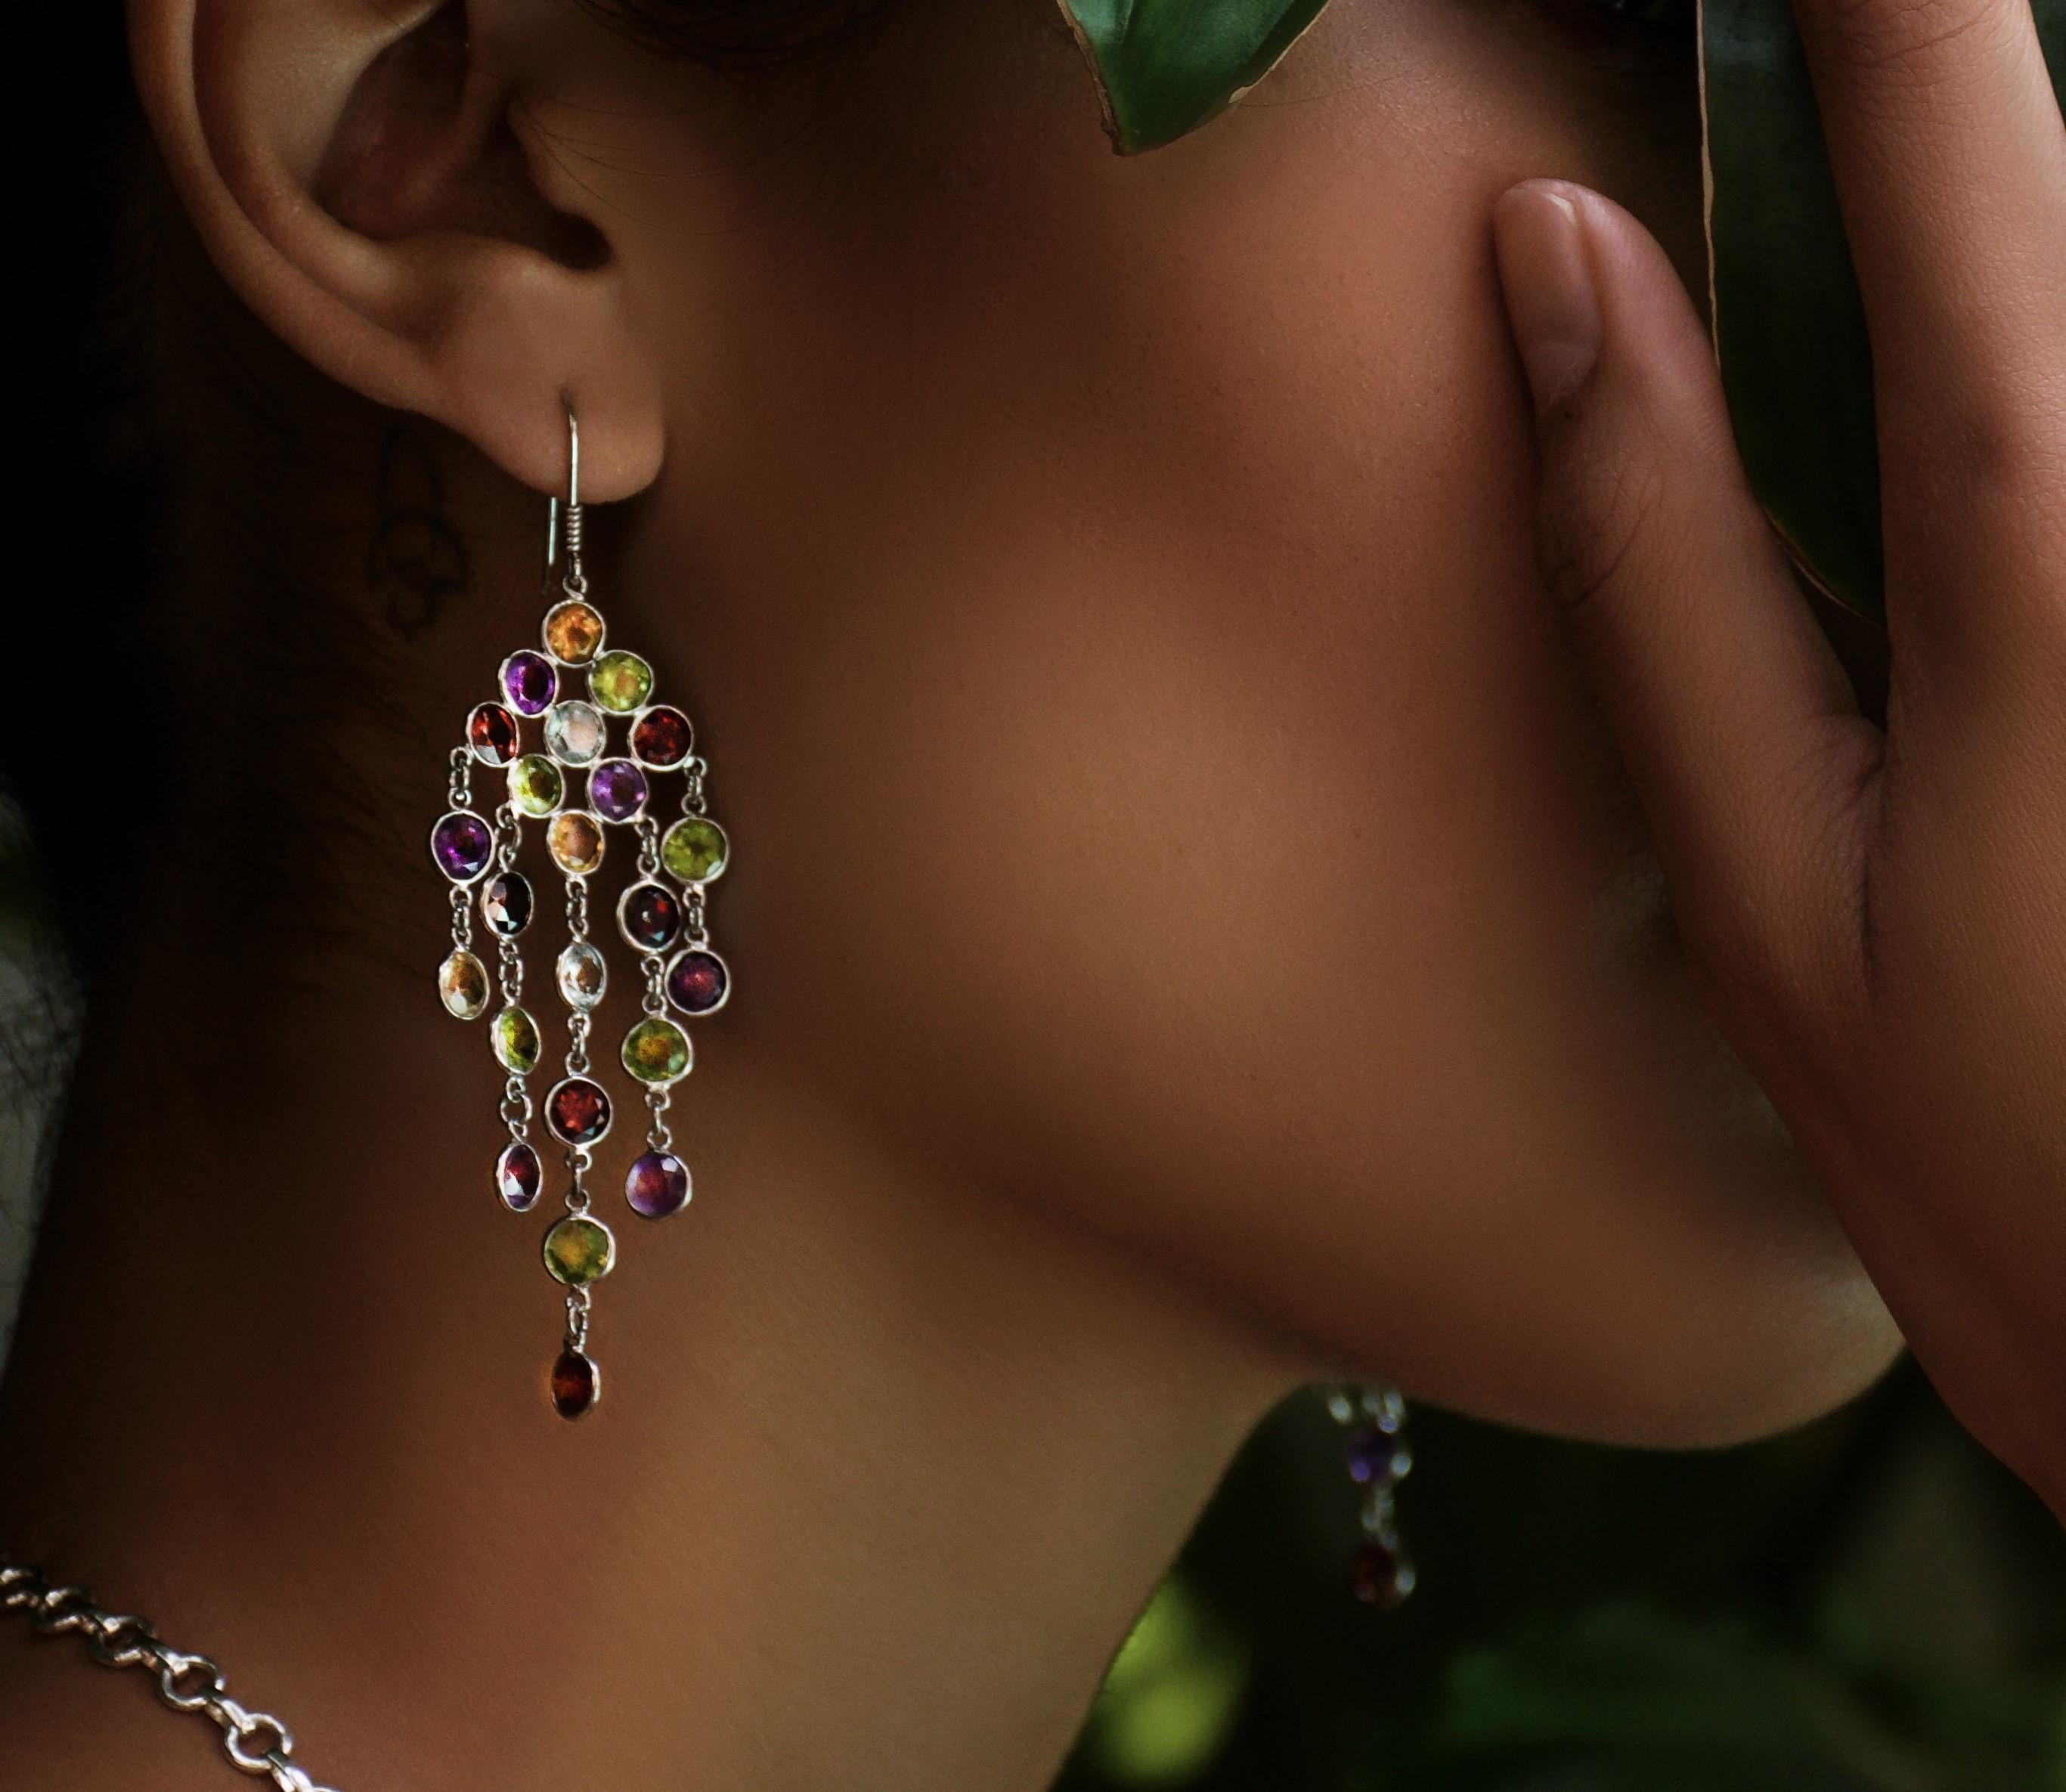 Stellen Sie sich vor, Sie tragen diese wunderschönen 11,5ctw Mix Edelstein-Kronleuchter-Ohrringe aus platinbeschichtetem Sterlingsilber, ein schillerndes Schaufenster der schönsten Farben der Natur und fesselnder Edelsteine. Diese exquisiten Pin